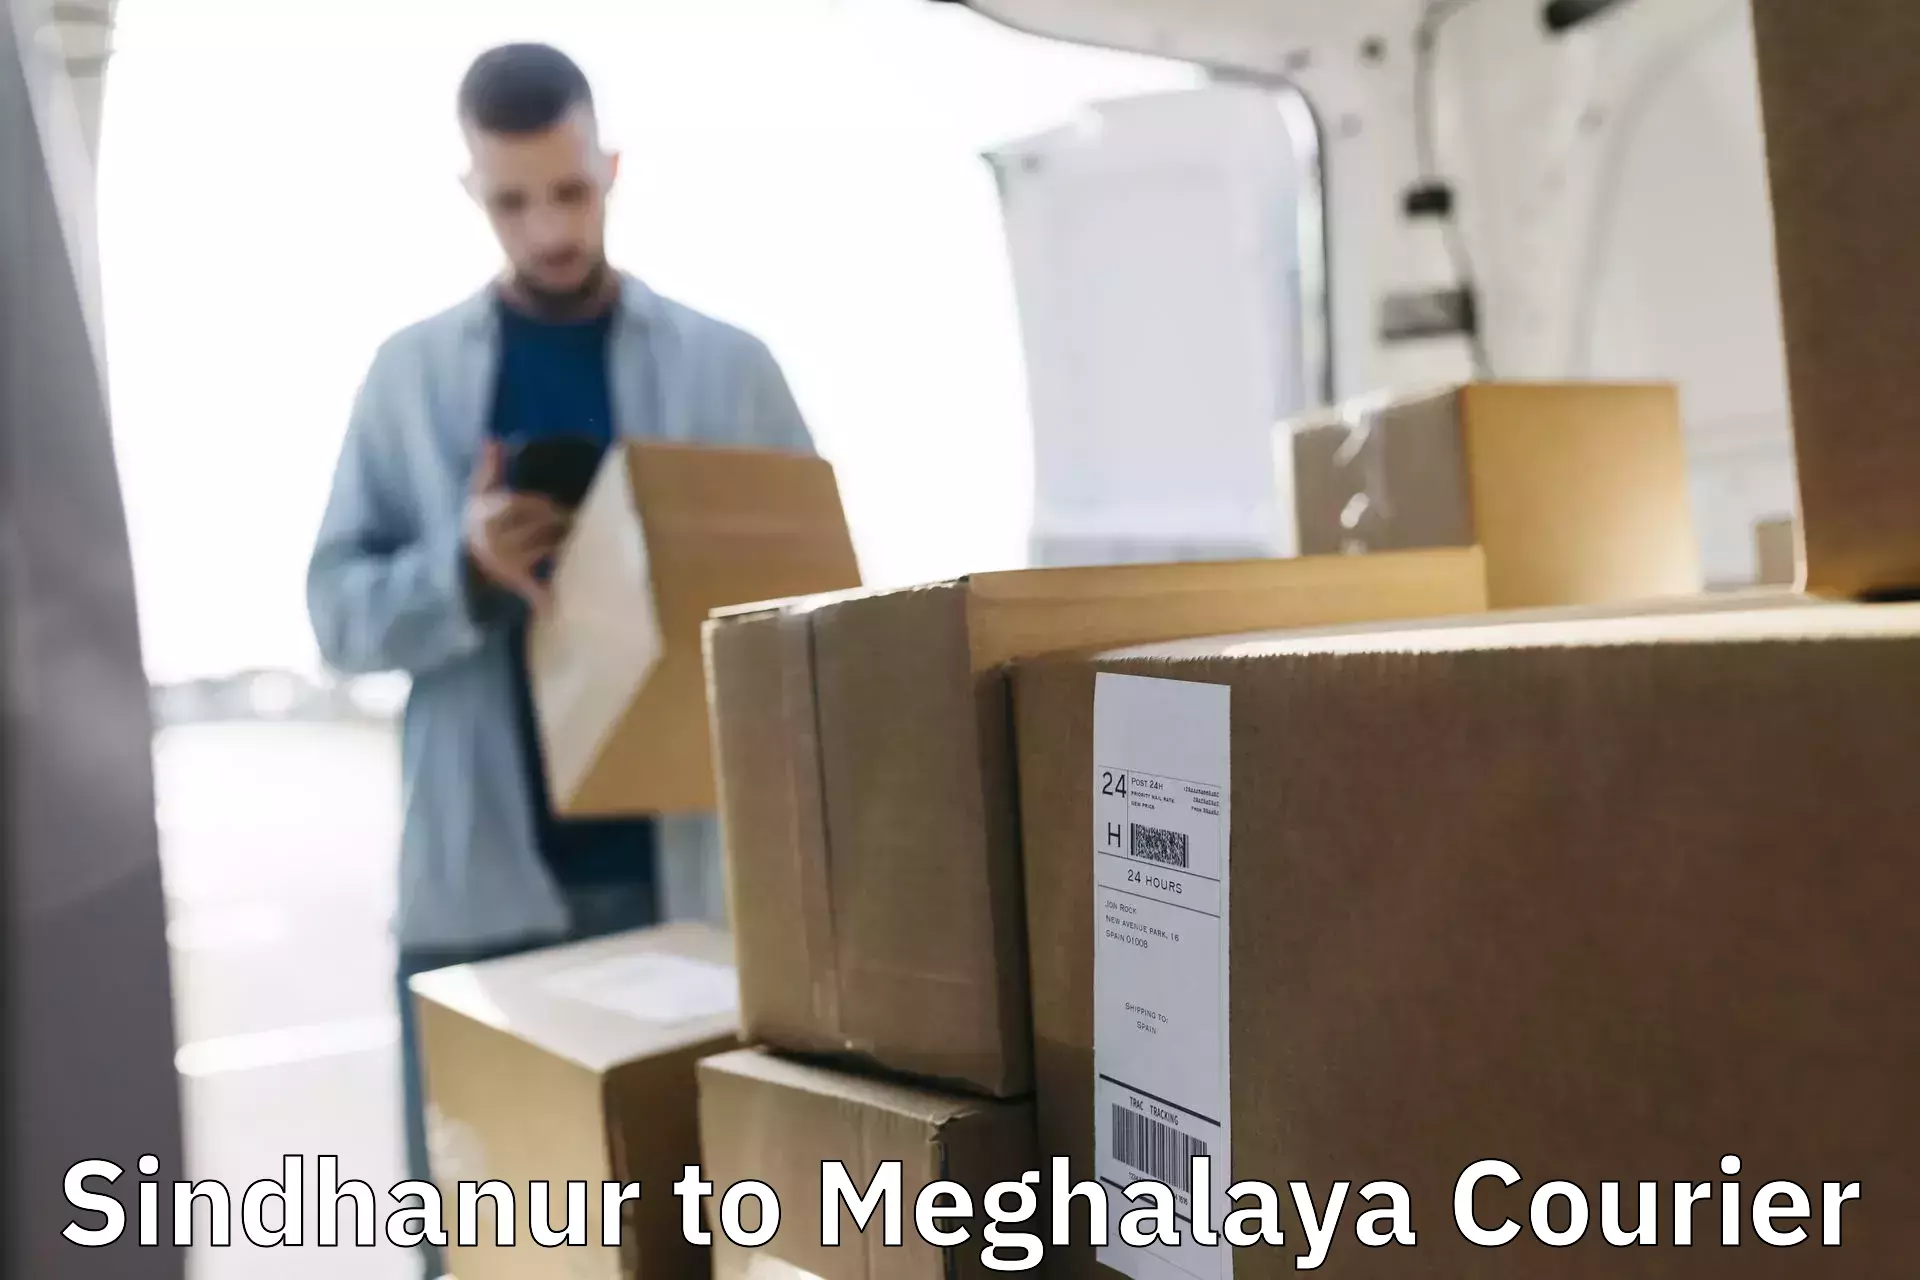 Premium courier services Sindhanur to West Khasi Hills